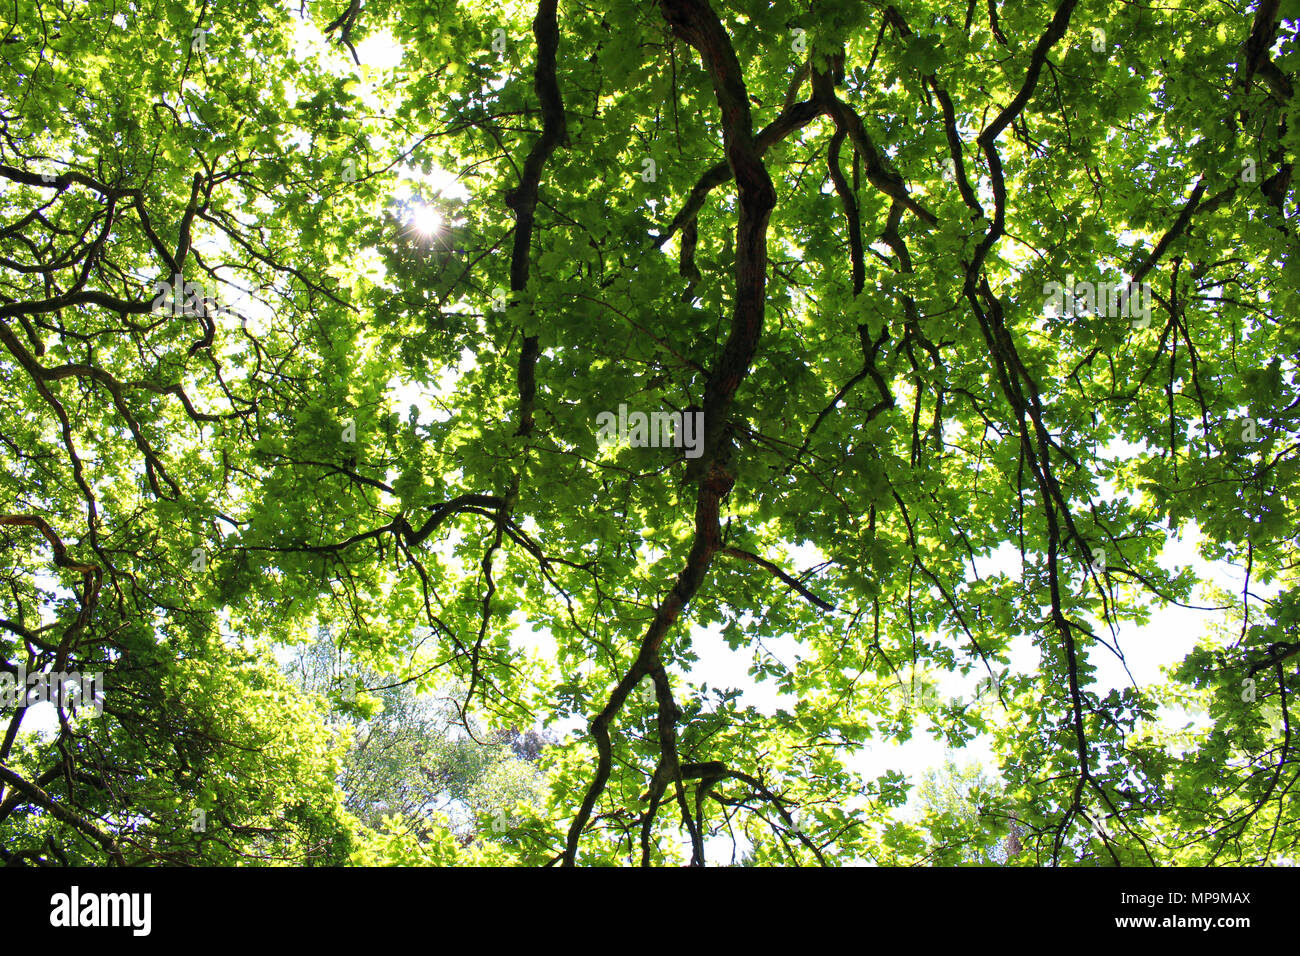 Une photographie à la hausse pour une branche d'arbre en surplomb, feuillage vert luxuriant, contre un ciel d'été bleu et la lumière du soleil, flare peeking through Banque D'Images